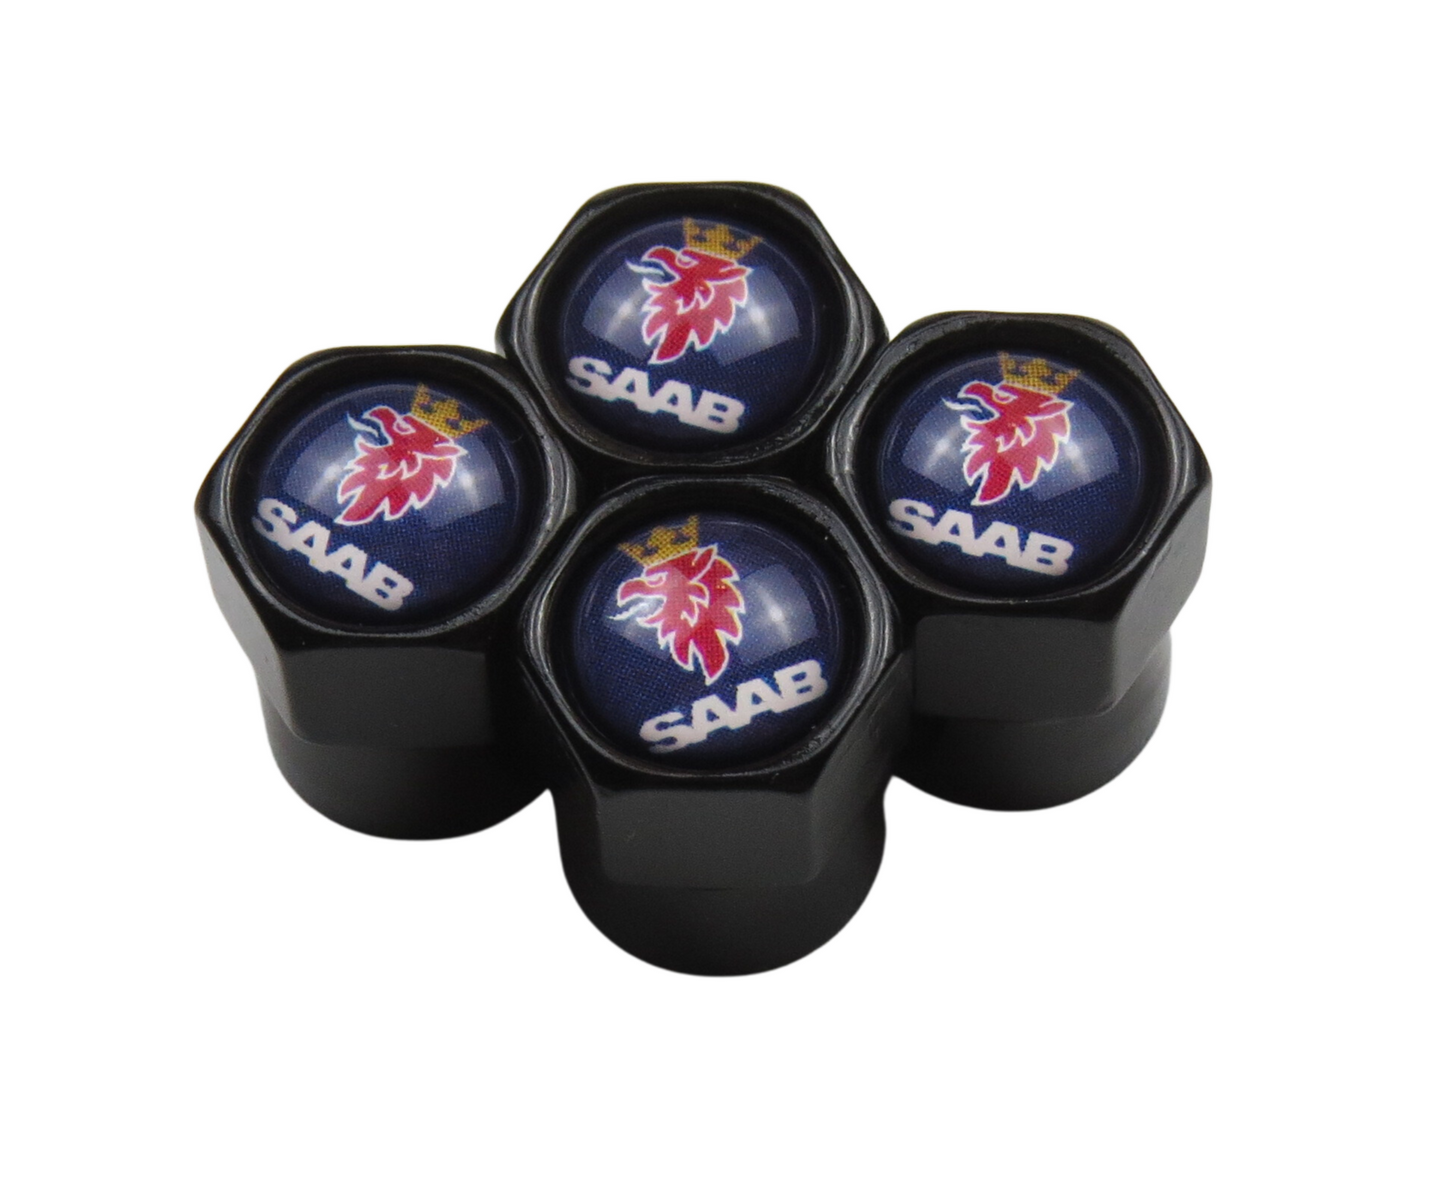 Saab Valve Caps - Black